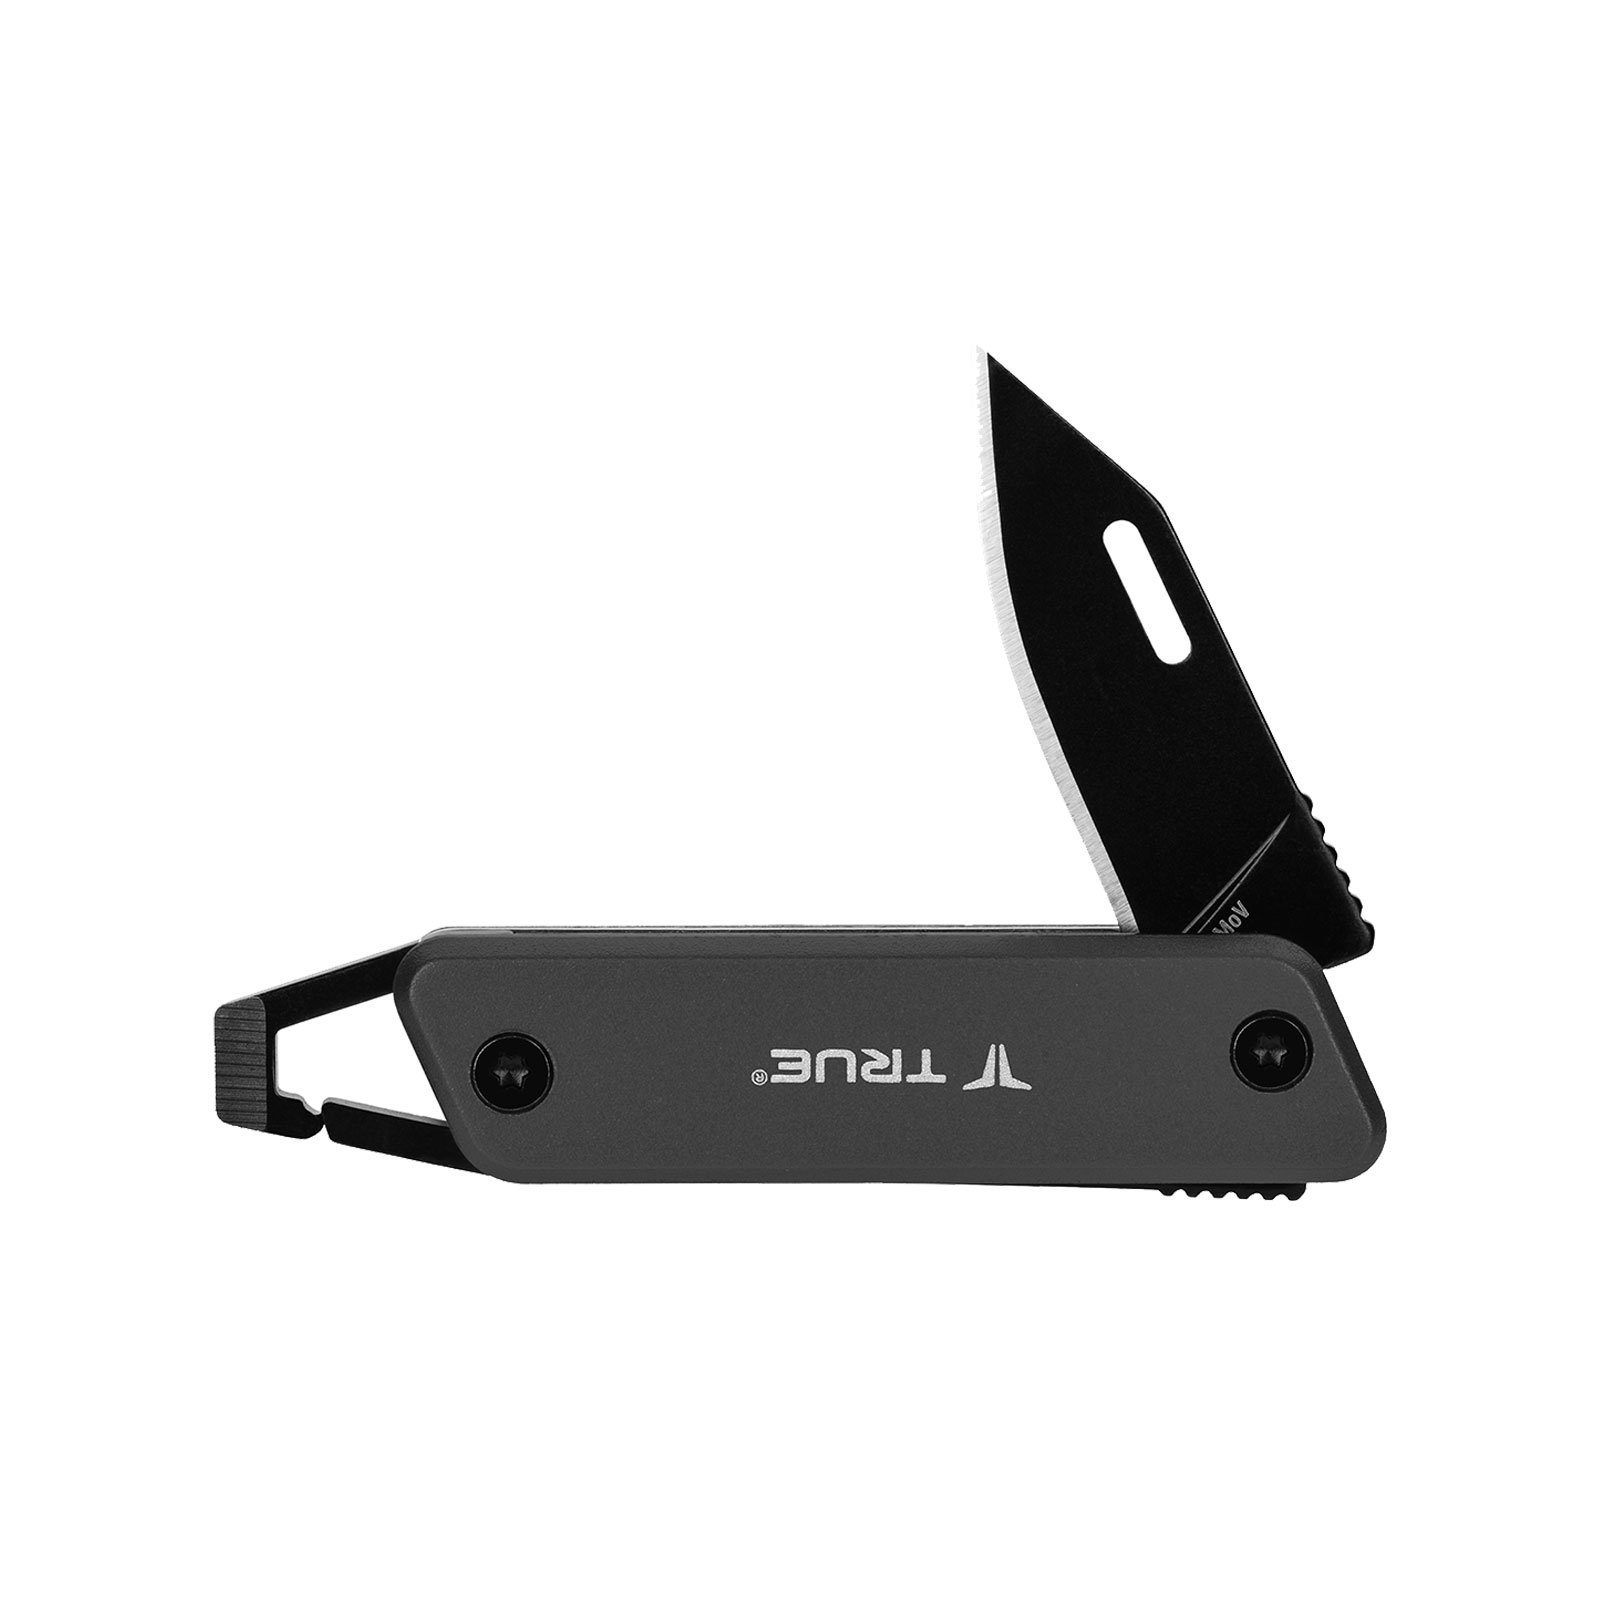 Chain True Utility Mini Key Tool Taschenmesser Schlüsselanhänger Knife, Taschenmesser Messer Grau